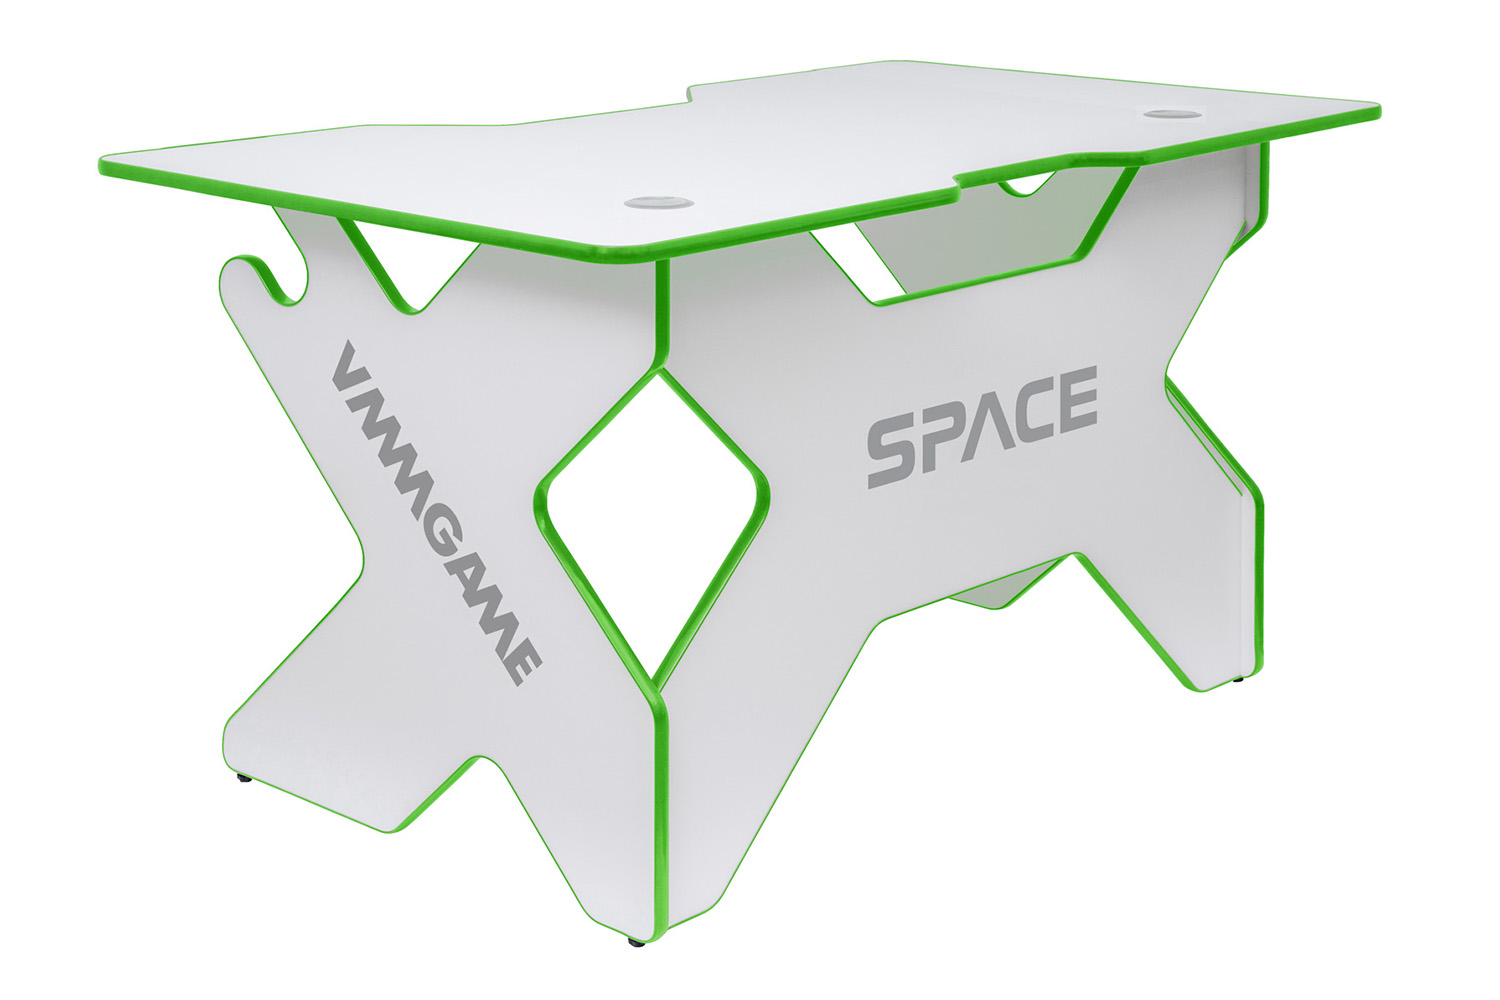 Игровой компьютерный стол VMMGAME Space 140 Light Green